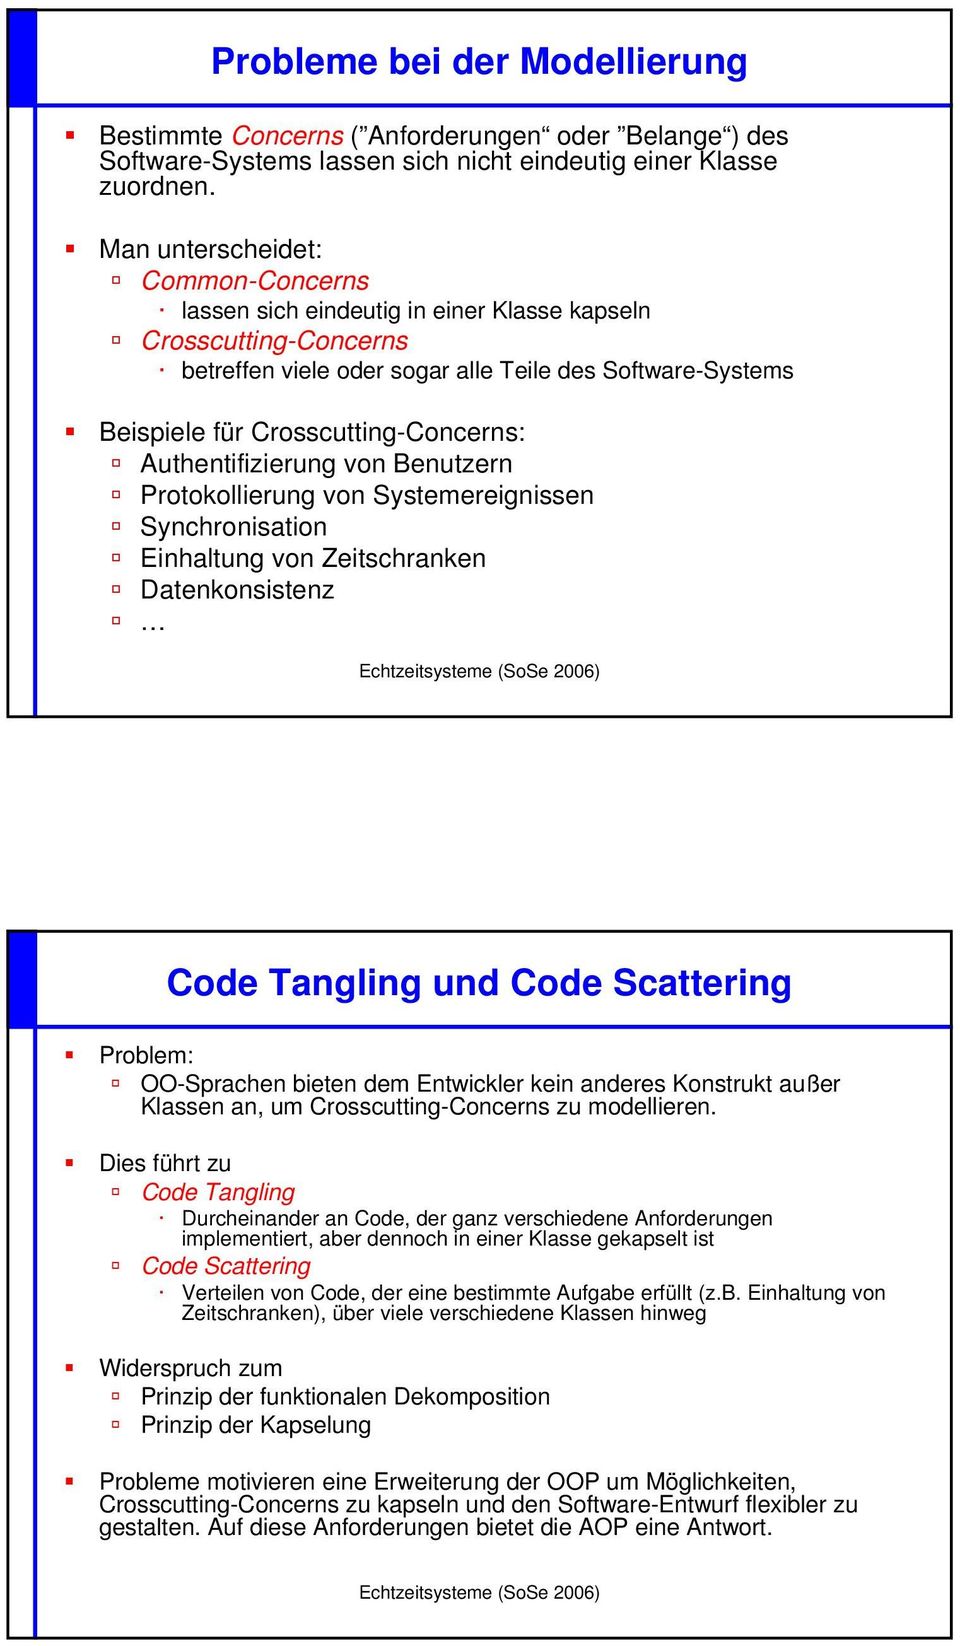 Authentifizierung von Benutzern Protokollierung von Systemereignissen Synchronisation Einhaltung von Zeitschranken Datenkonsistenz Code Tangling und Code Scattering Problem: OO-Sprachen bieten dem